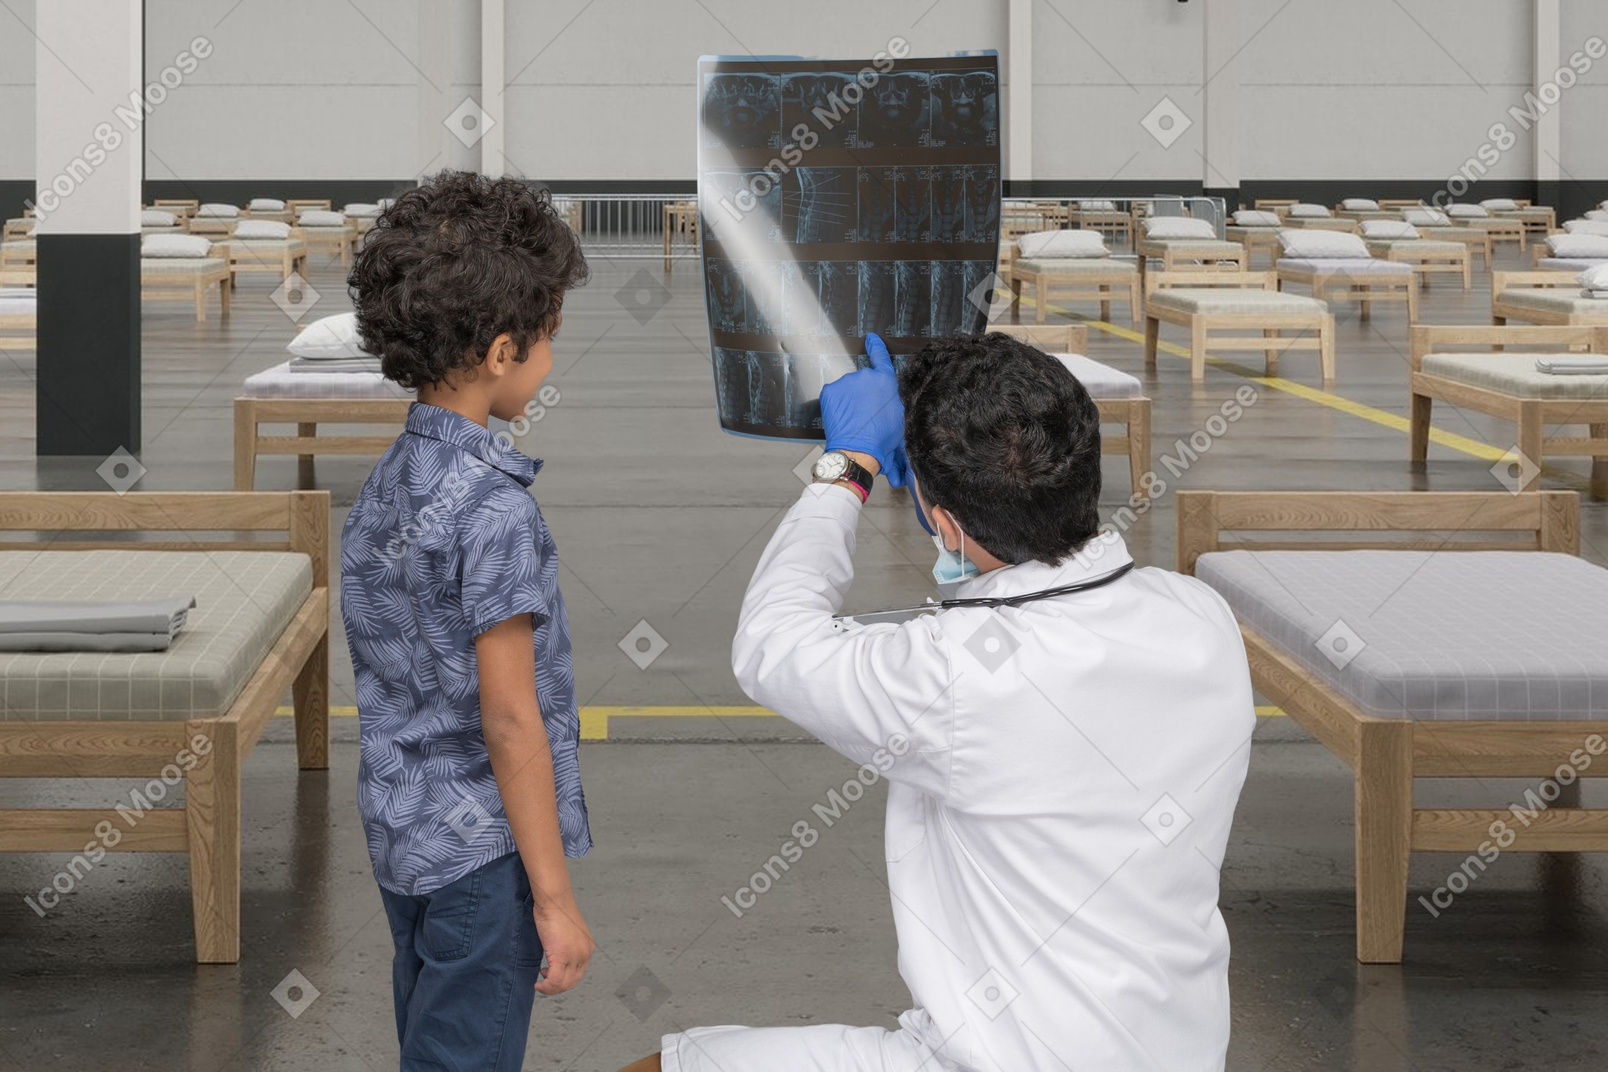 엑스레이 이미지를 보고 있는 의사와 어린 소년